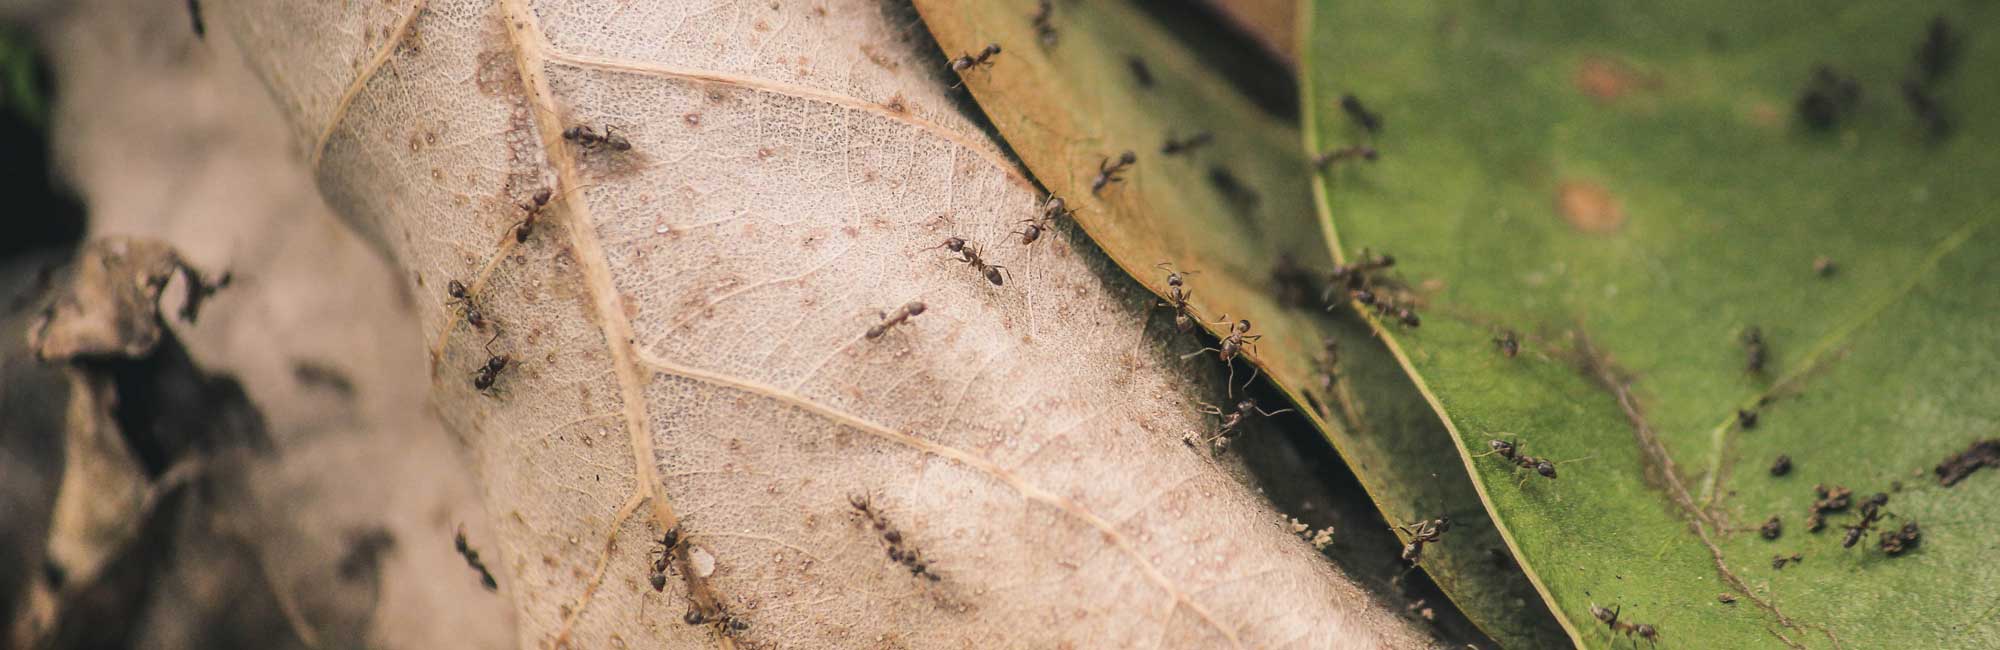 Ants on leaves